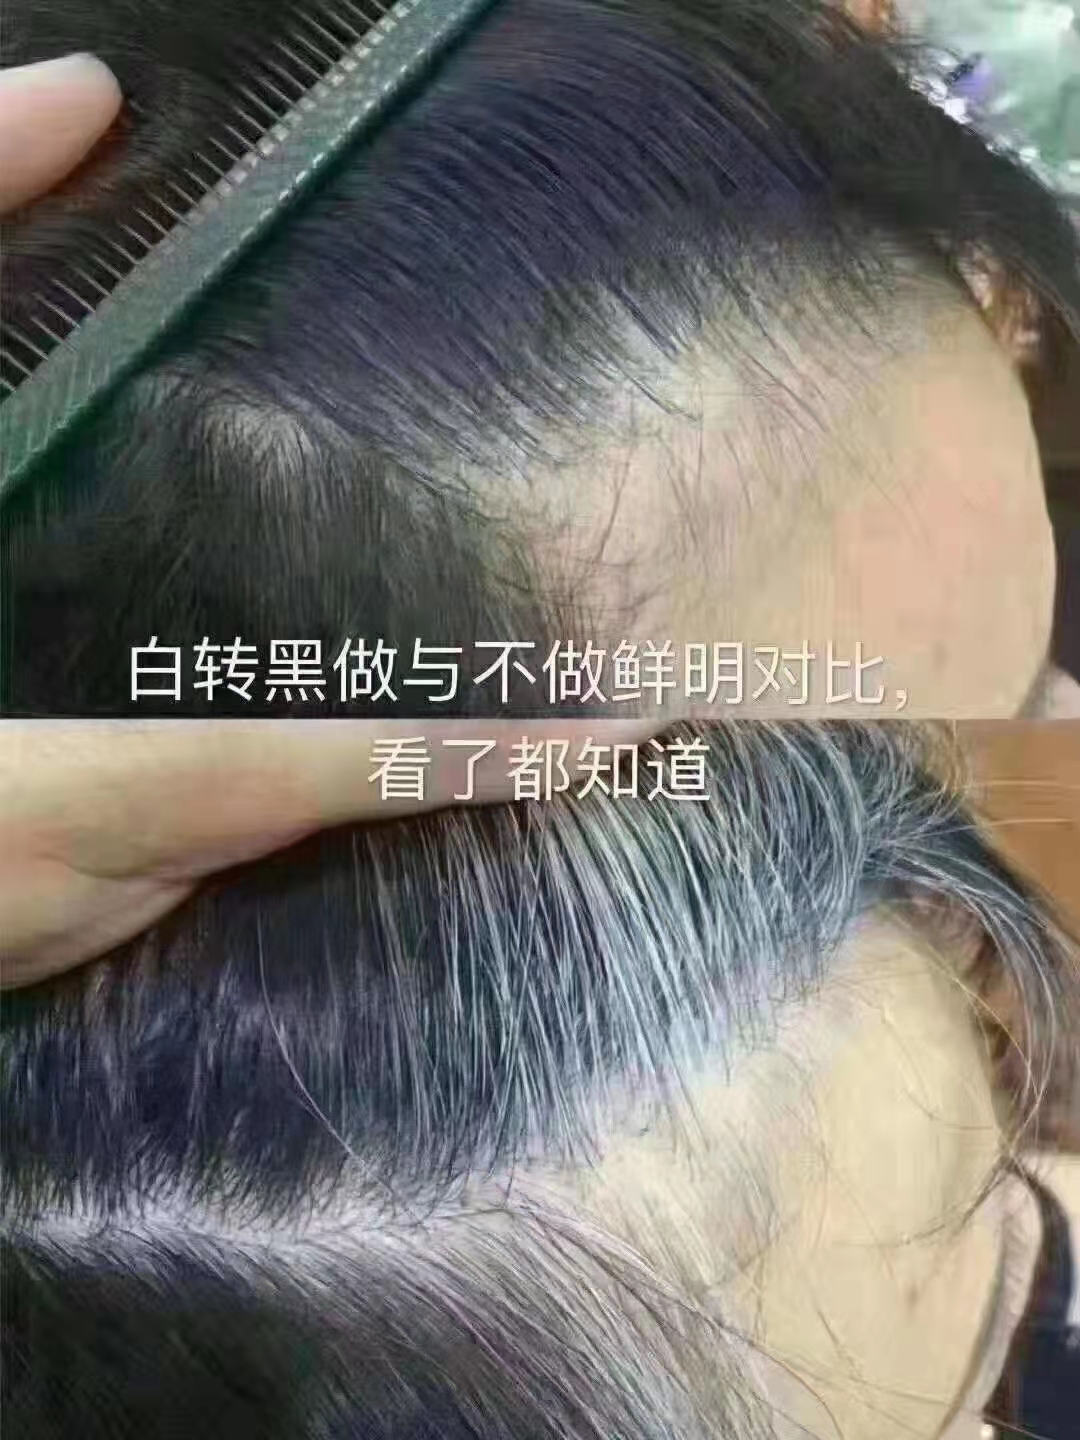 秀丝顿植物养发是一家专注于头发护理的品牌，其防脱发产品备受好评